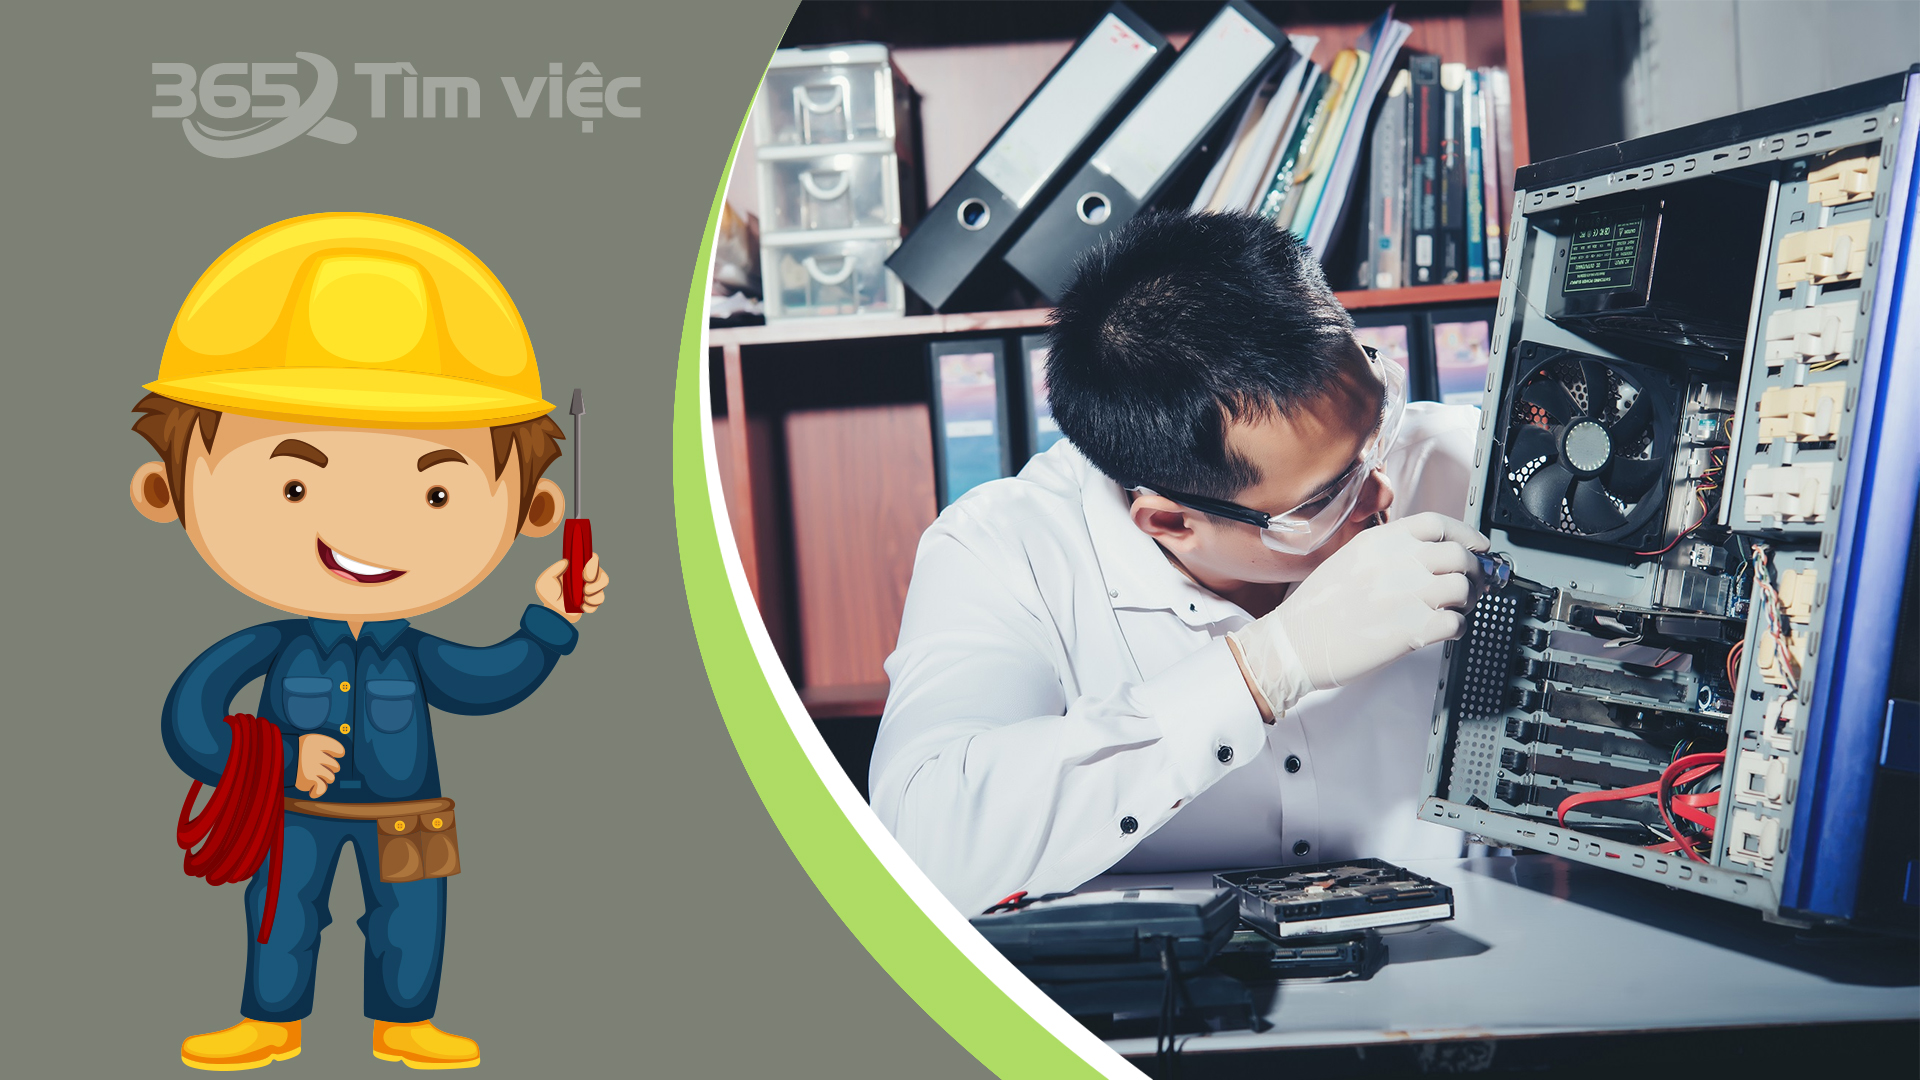 Tìm việc làm điện - điện tử tại Điện Biên với timviec365.vn